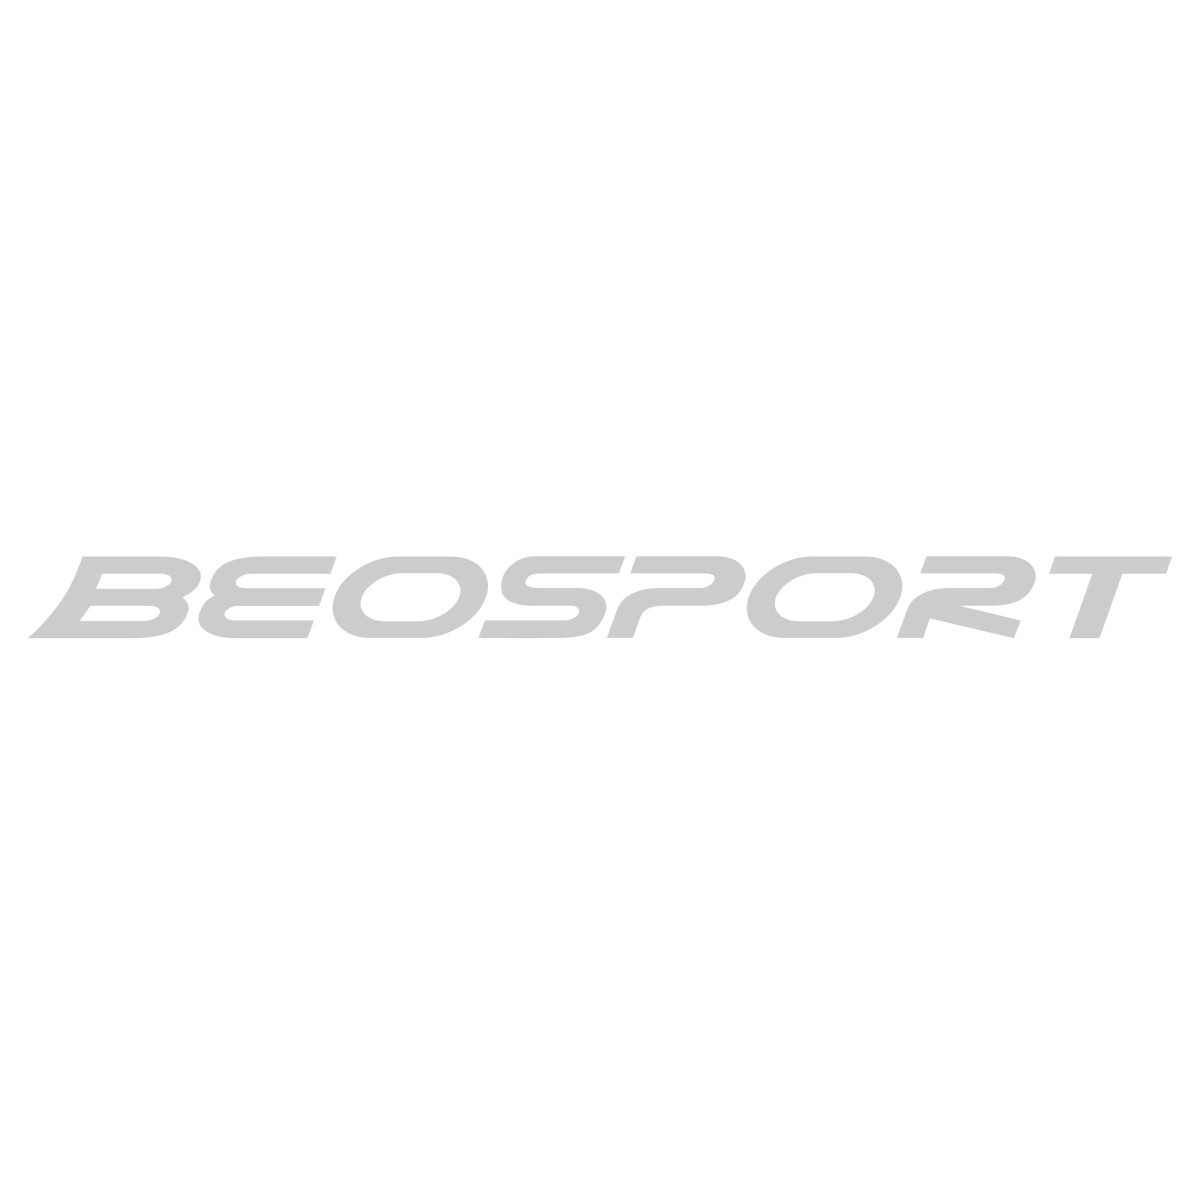 Skin majice - Surf oprema - Beosport.com